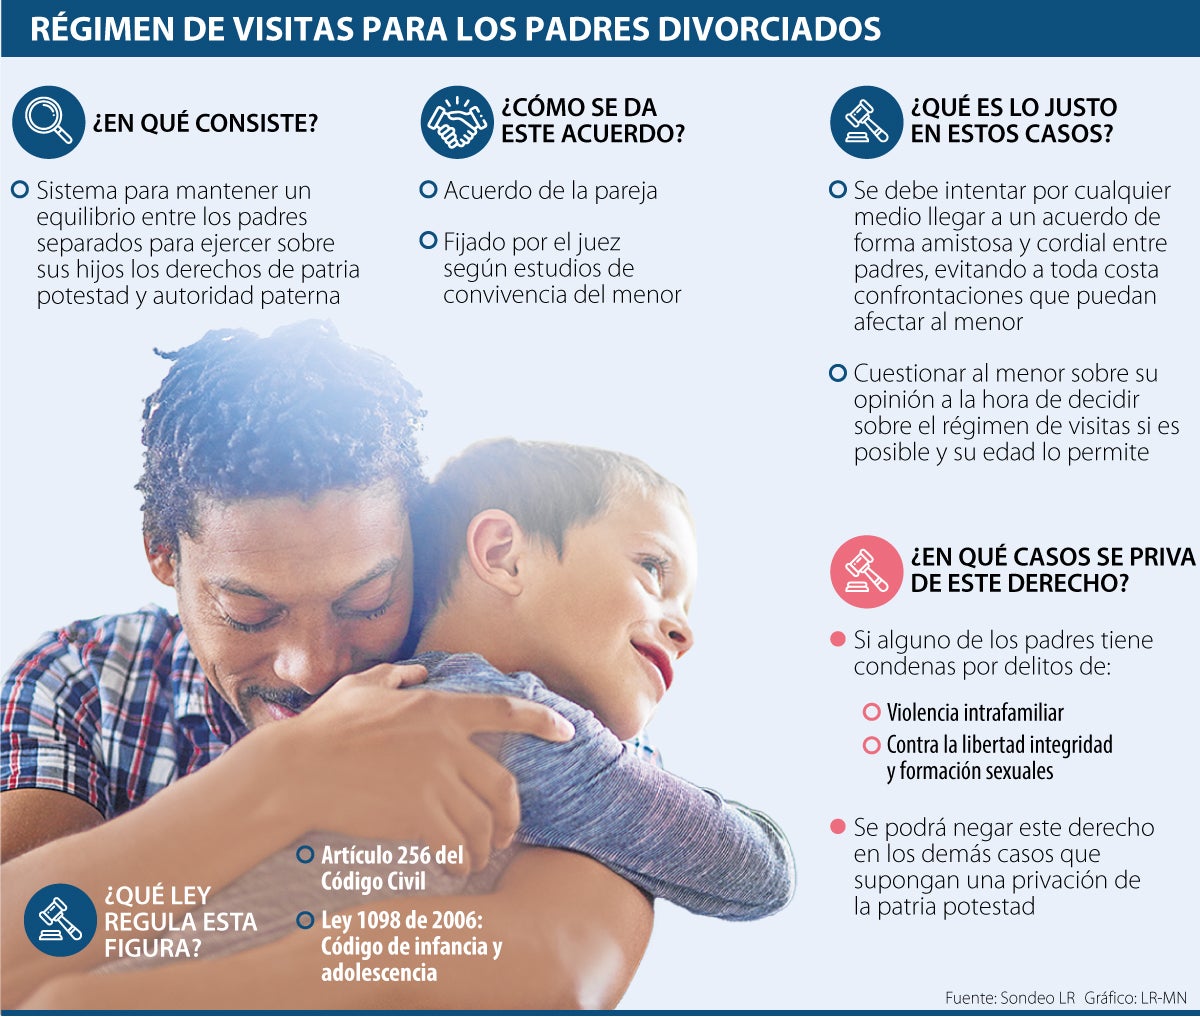 conozca cómo funciona el régimen de visitas para las parejas divorciadas con hijos